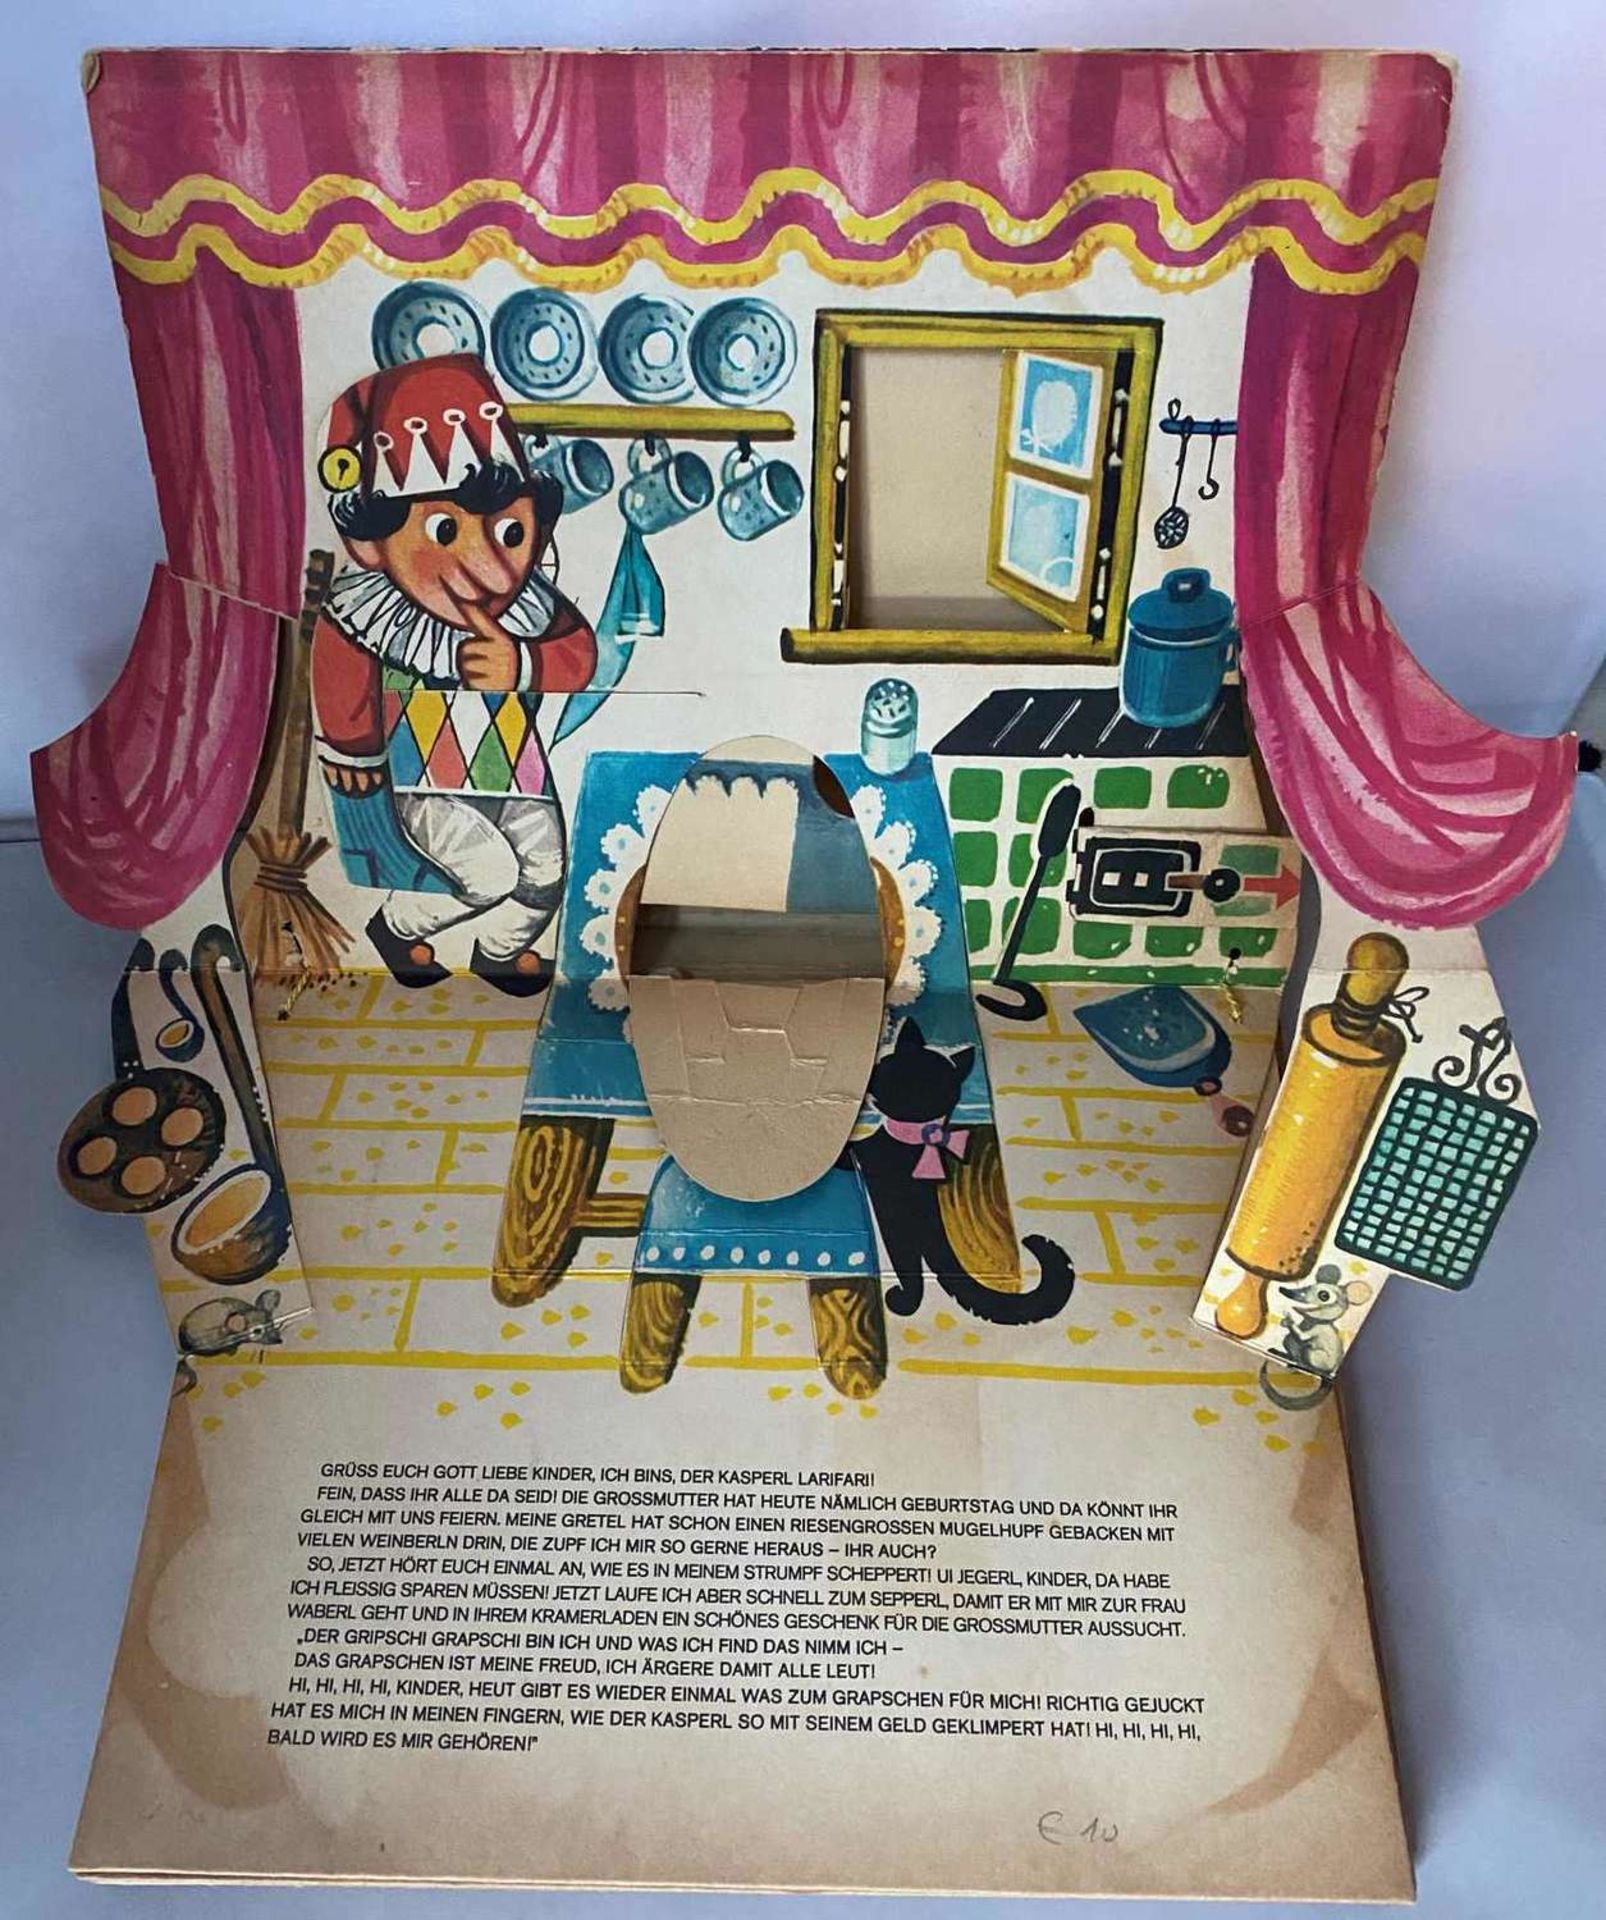 Kinderbuch : Kinder seid ihr alle da ? - Pop-up-Buch, Frick Verlag - Wien. Illustrationen V. Kubast - Bild 2 aus 6